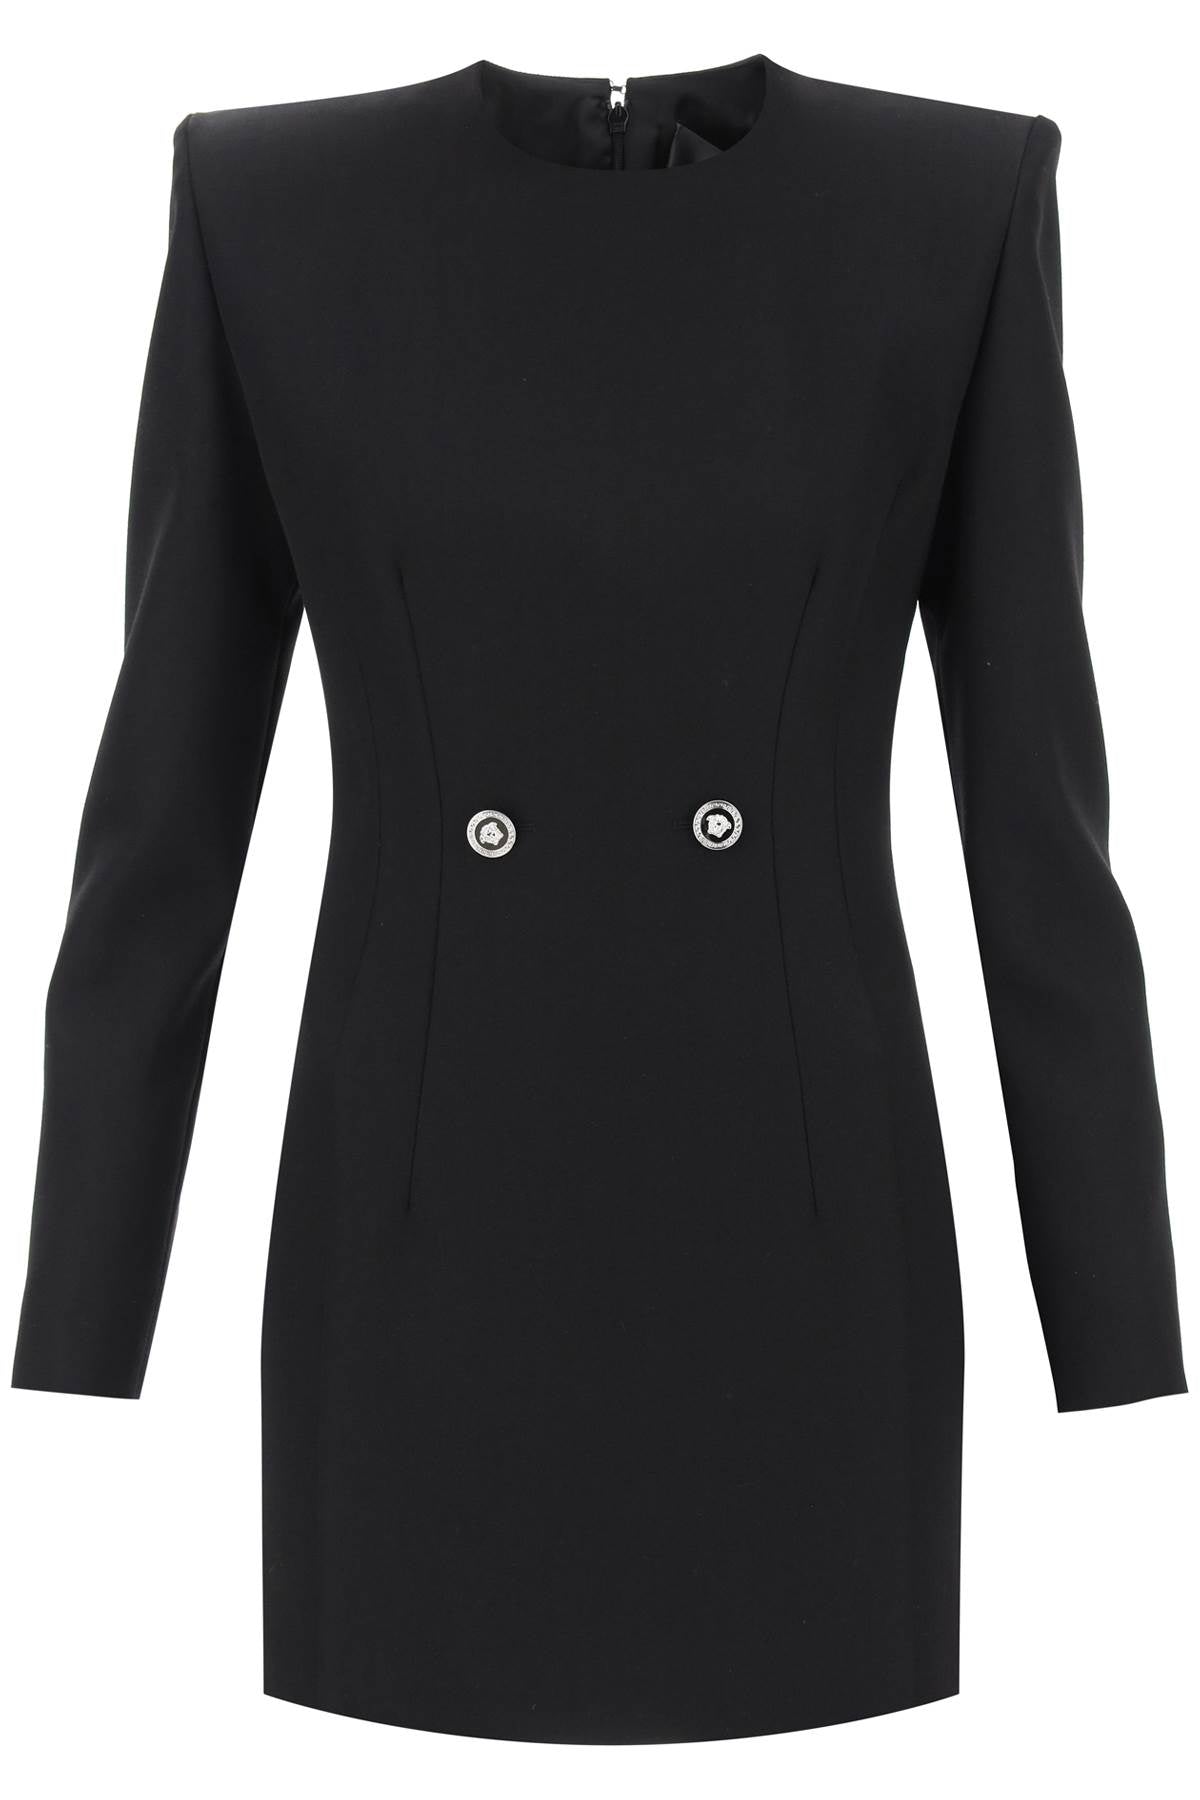 黑色纯羊毛女士连衣裙，带有标志钮扣和衬垫肩